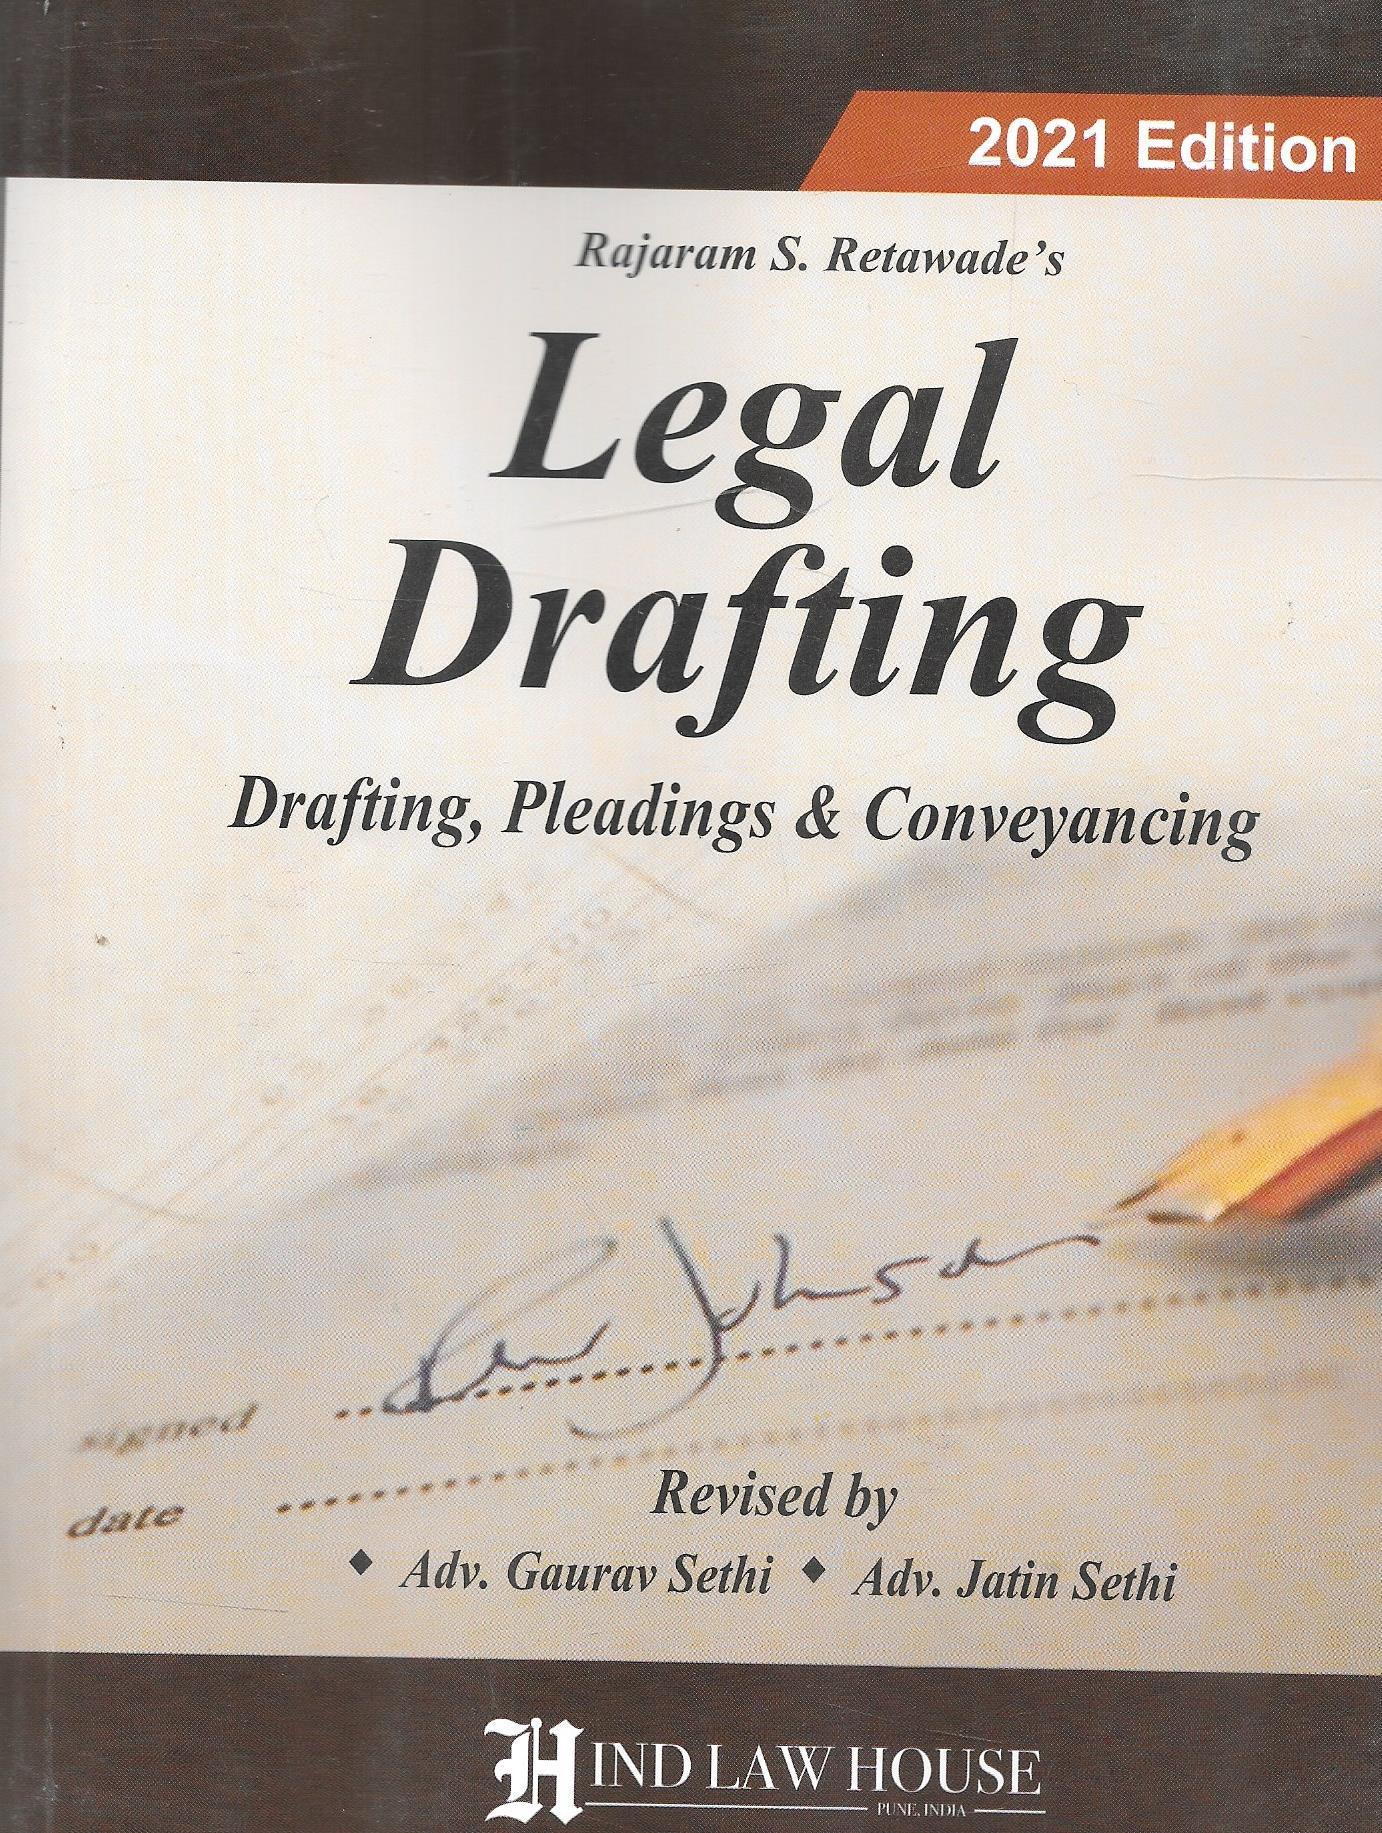 Legal Drafting Drafting, Pleadings, & Conveyancing